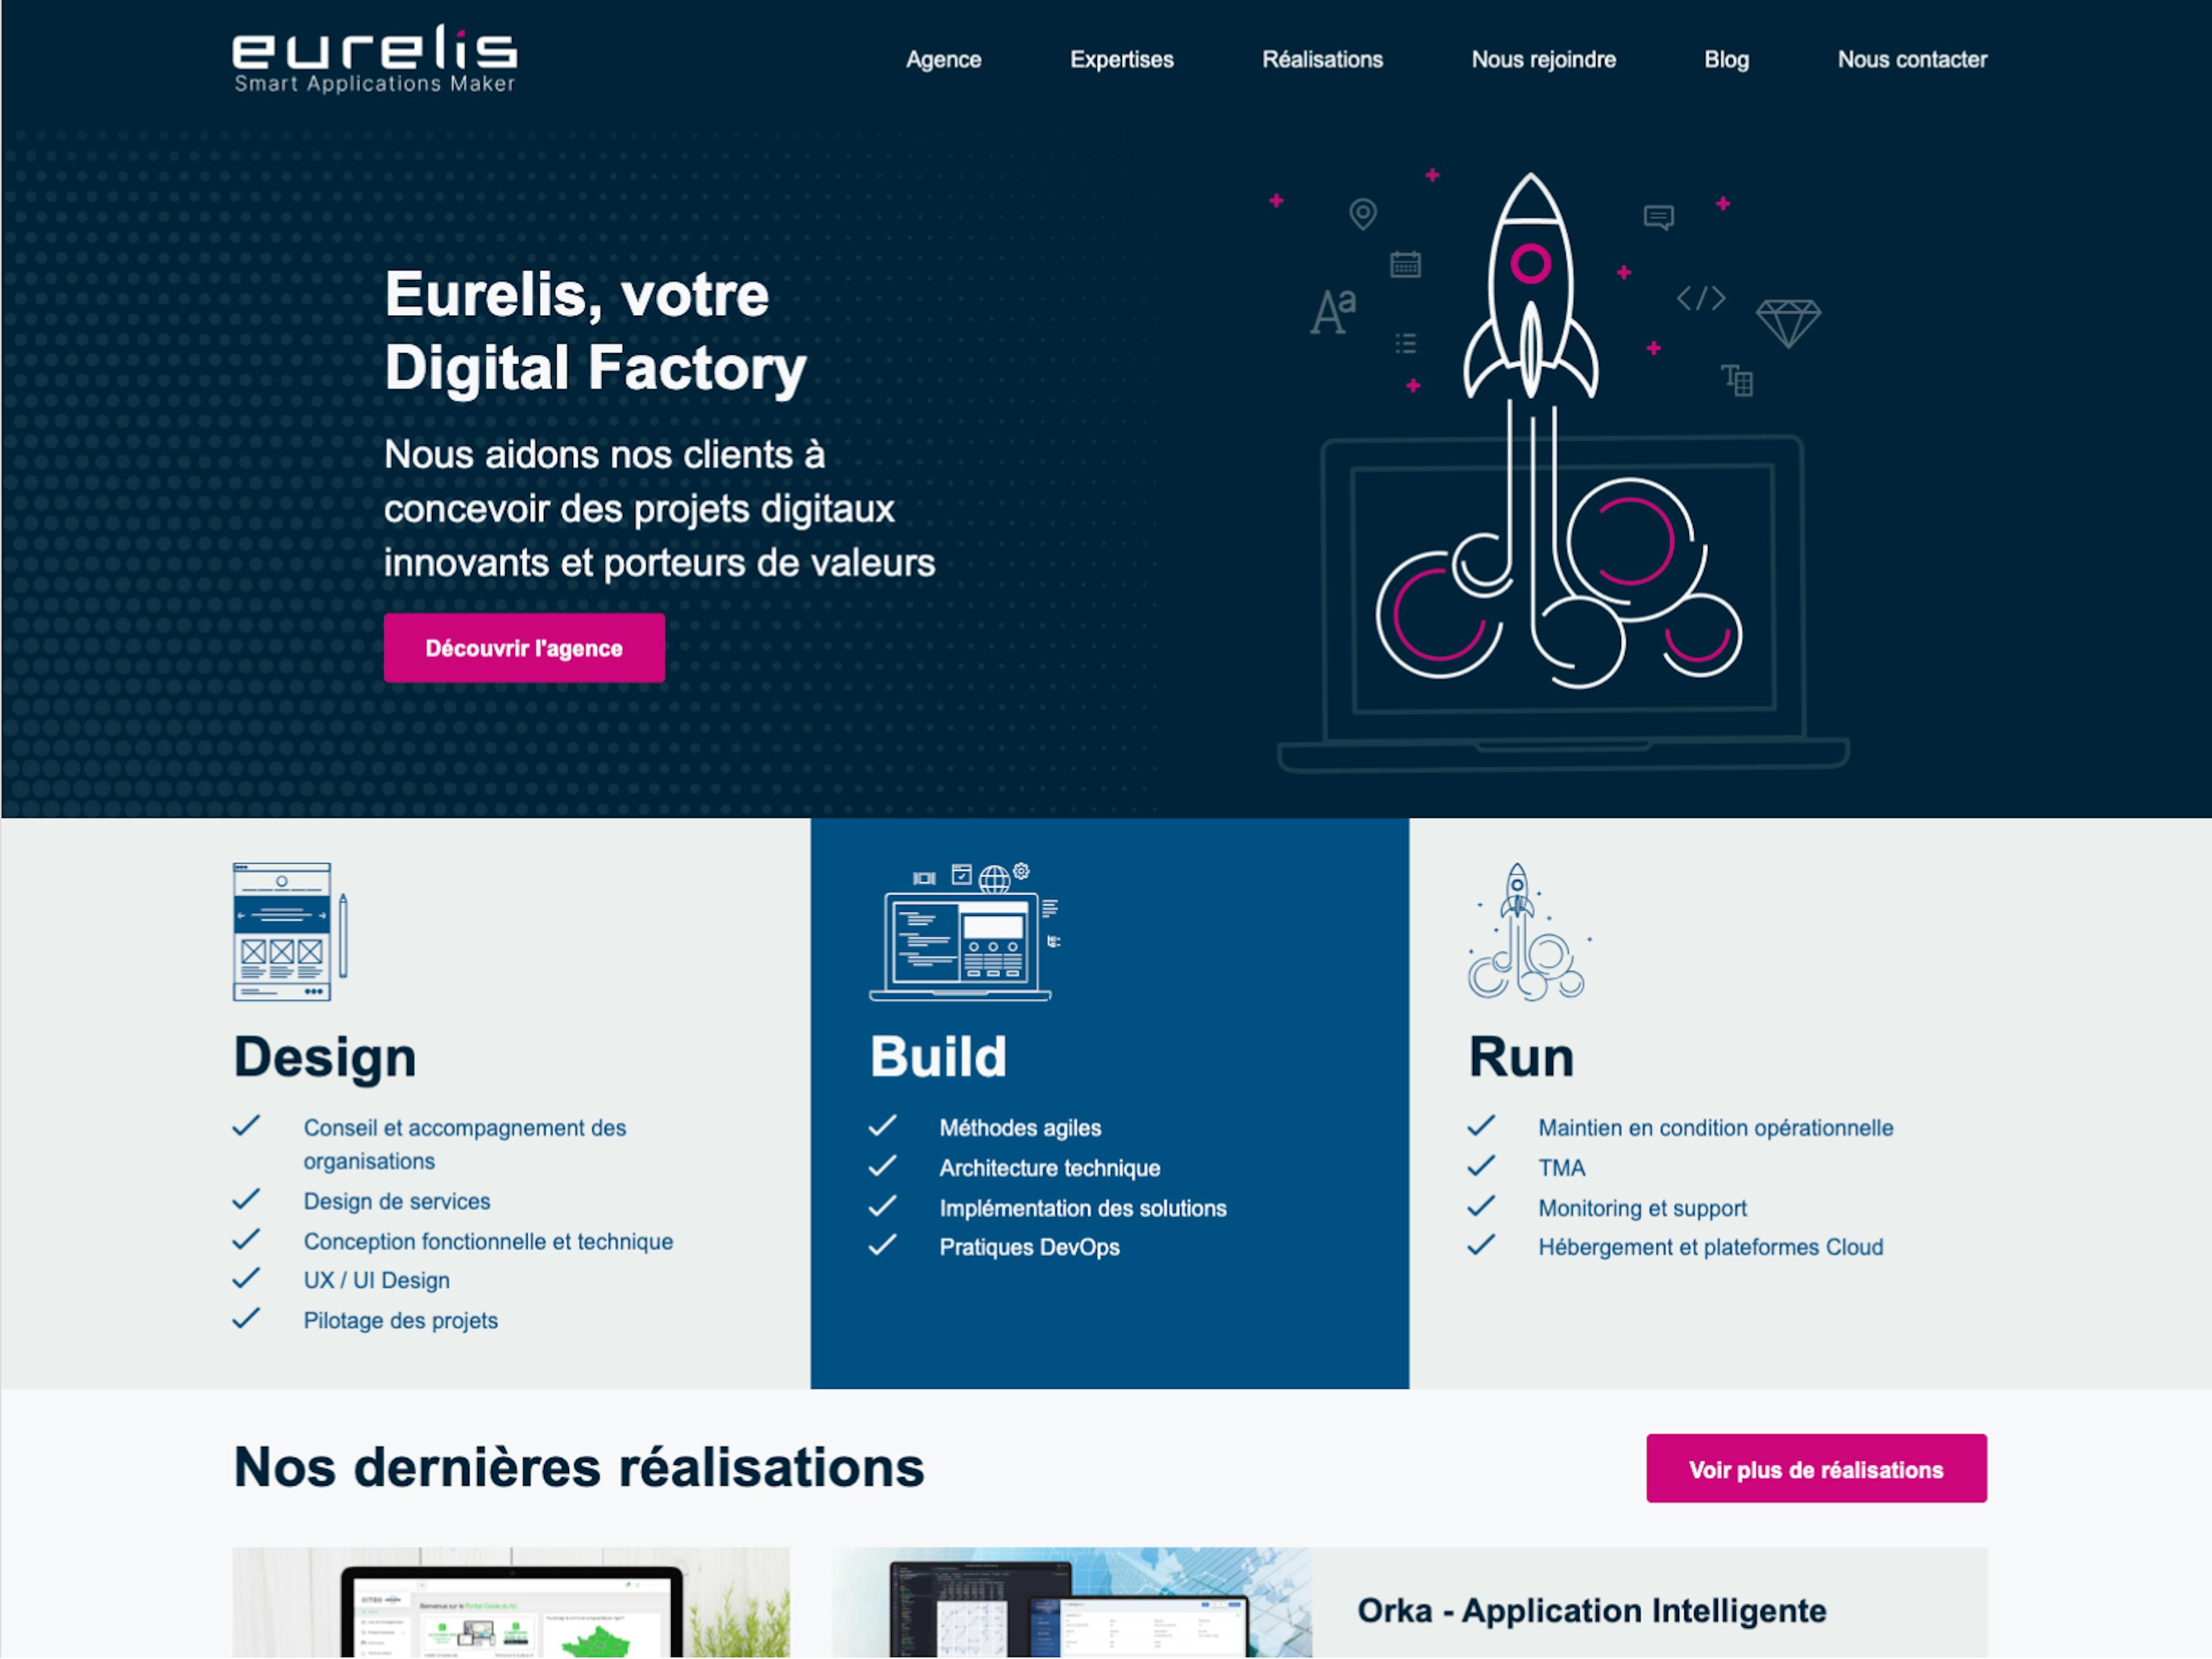 Eurelis agency